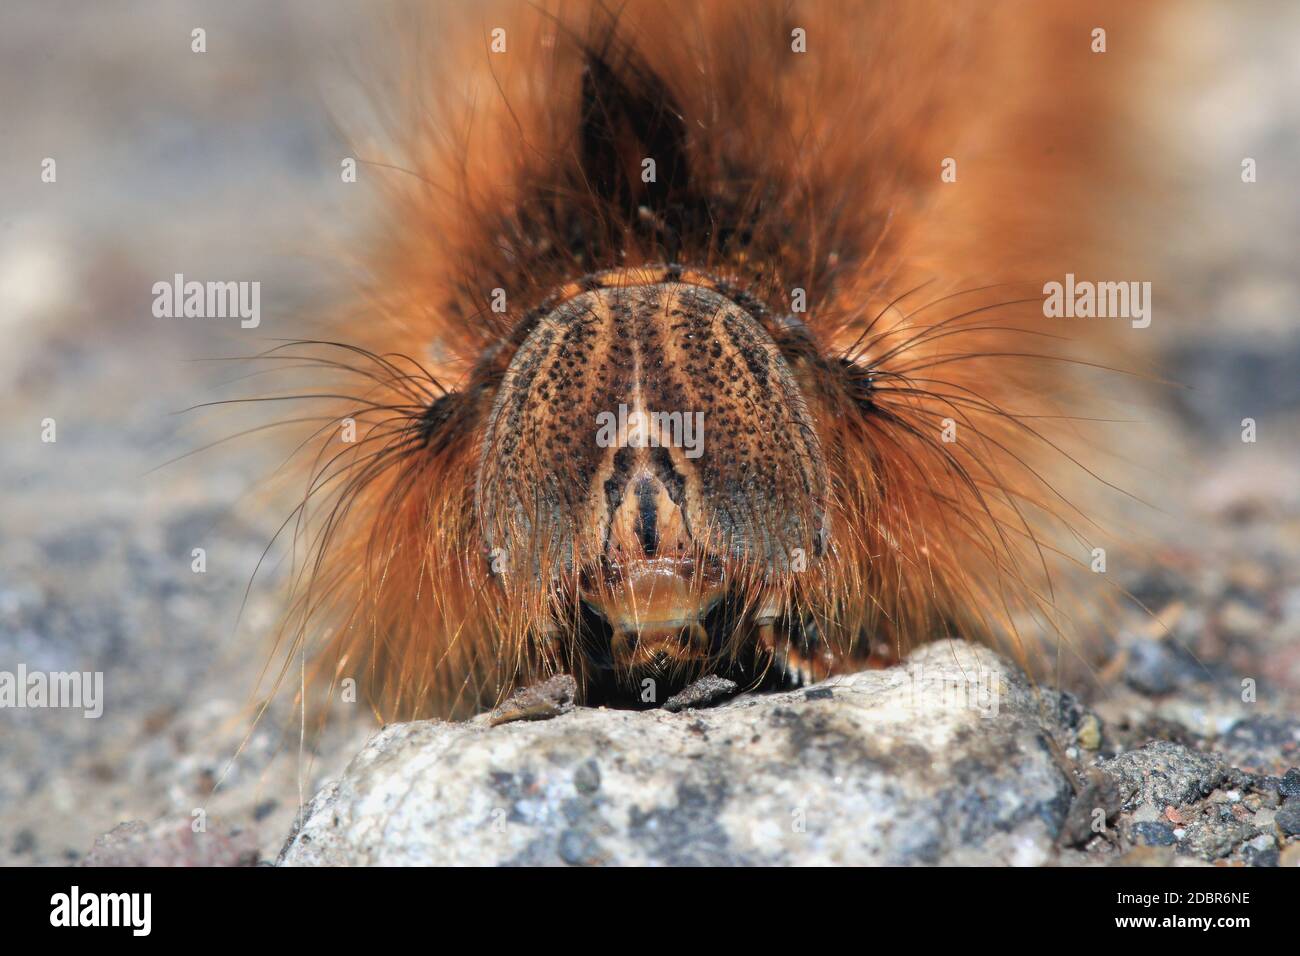 Caterpillar of the drinker, Euthrix potatoria, close-up Stock Photo